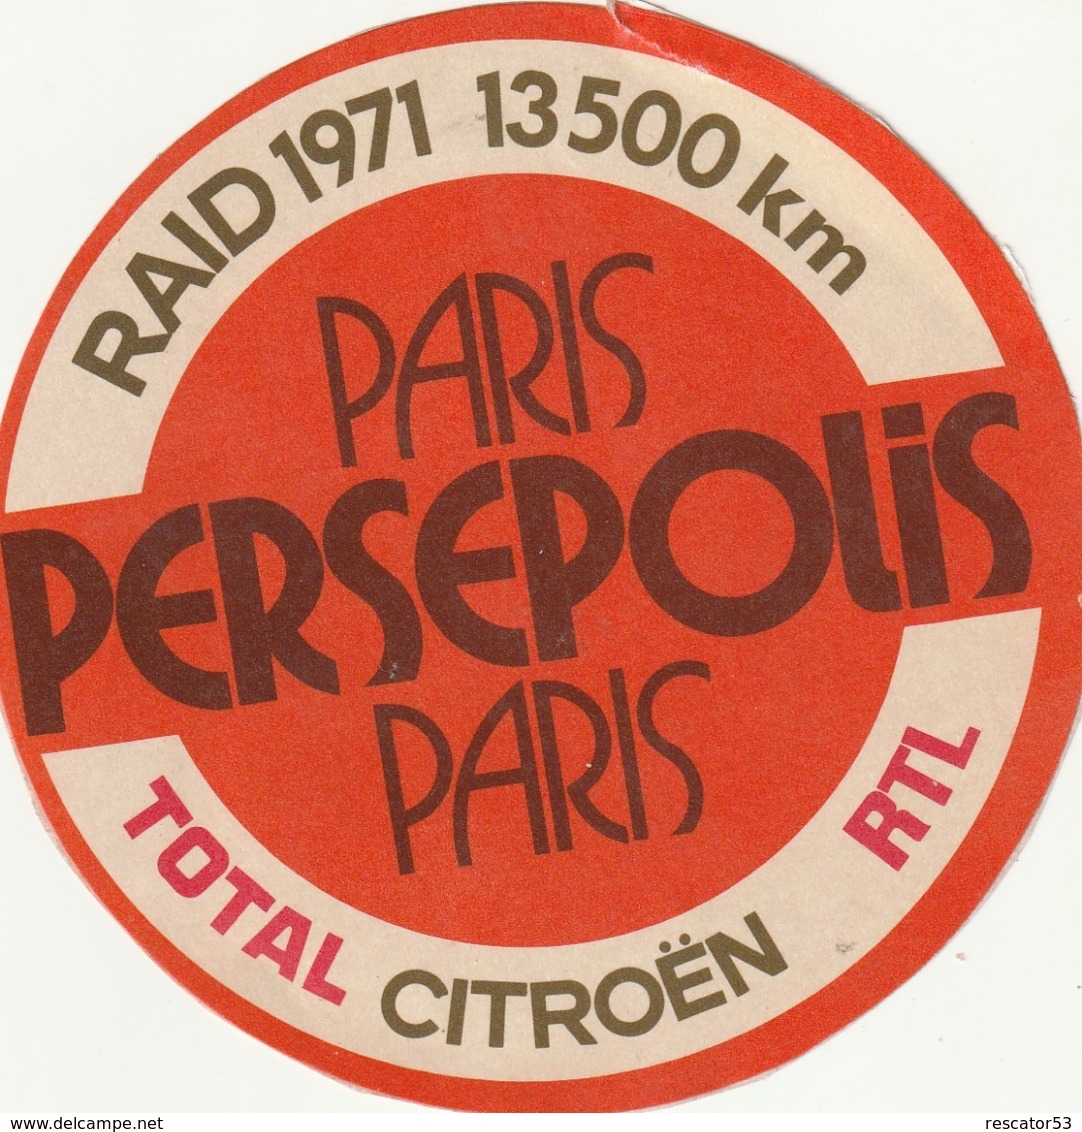 Rare Autocollant Raid 1971 Paris Persepolis Paris 13500 Km Total Citroën RTL - Autocollants